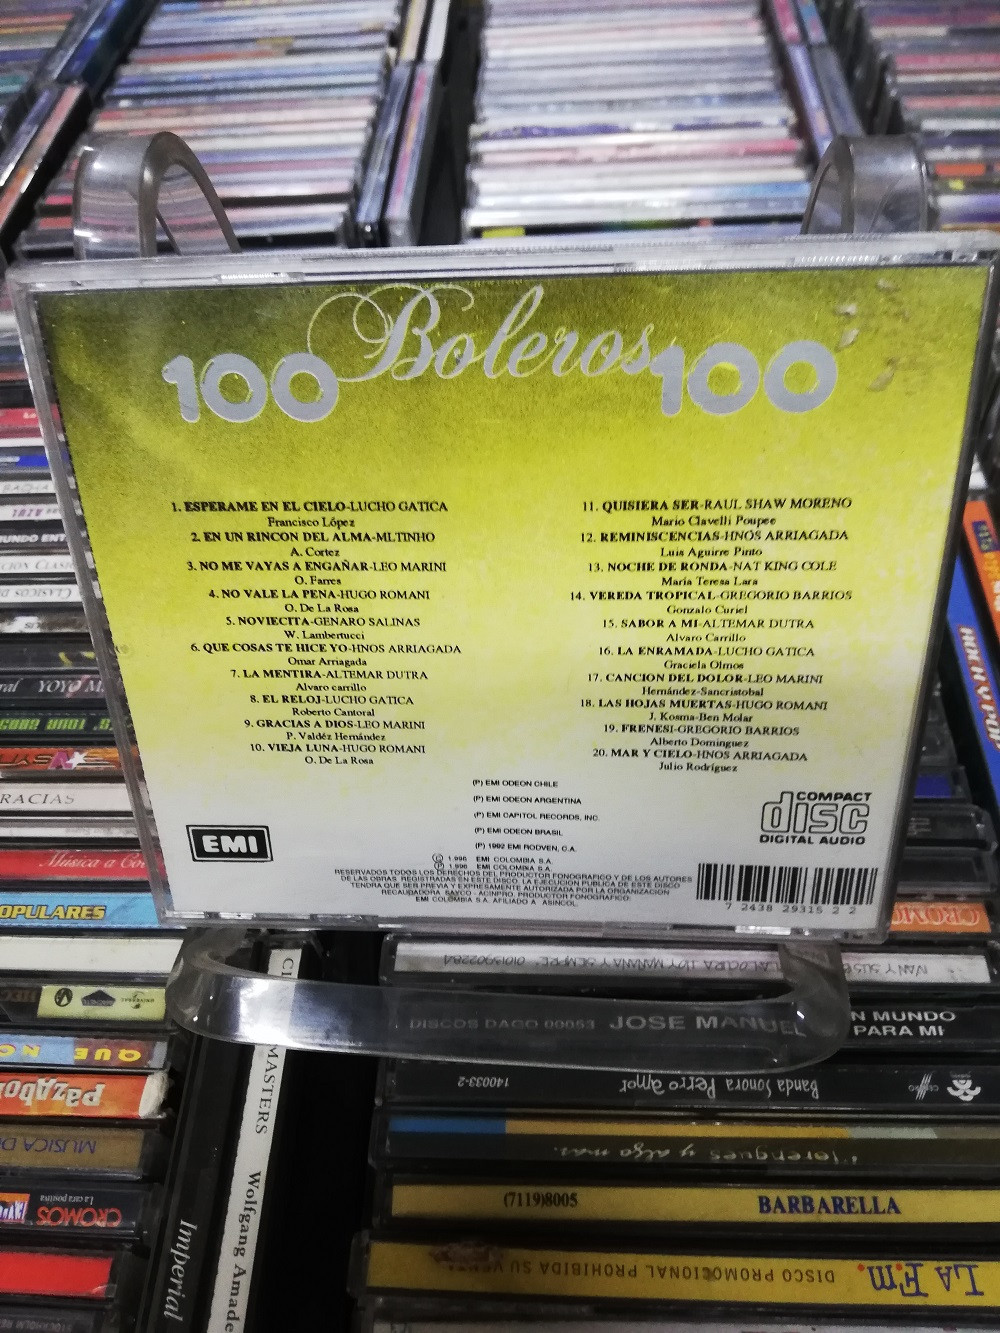 Imagen CD 100 BOLEROS - 100 BOLEROS VOL. 3 2